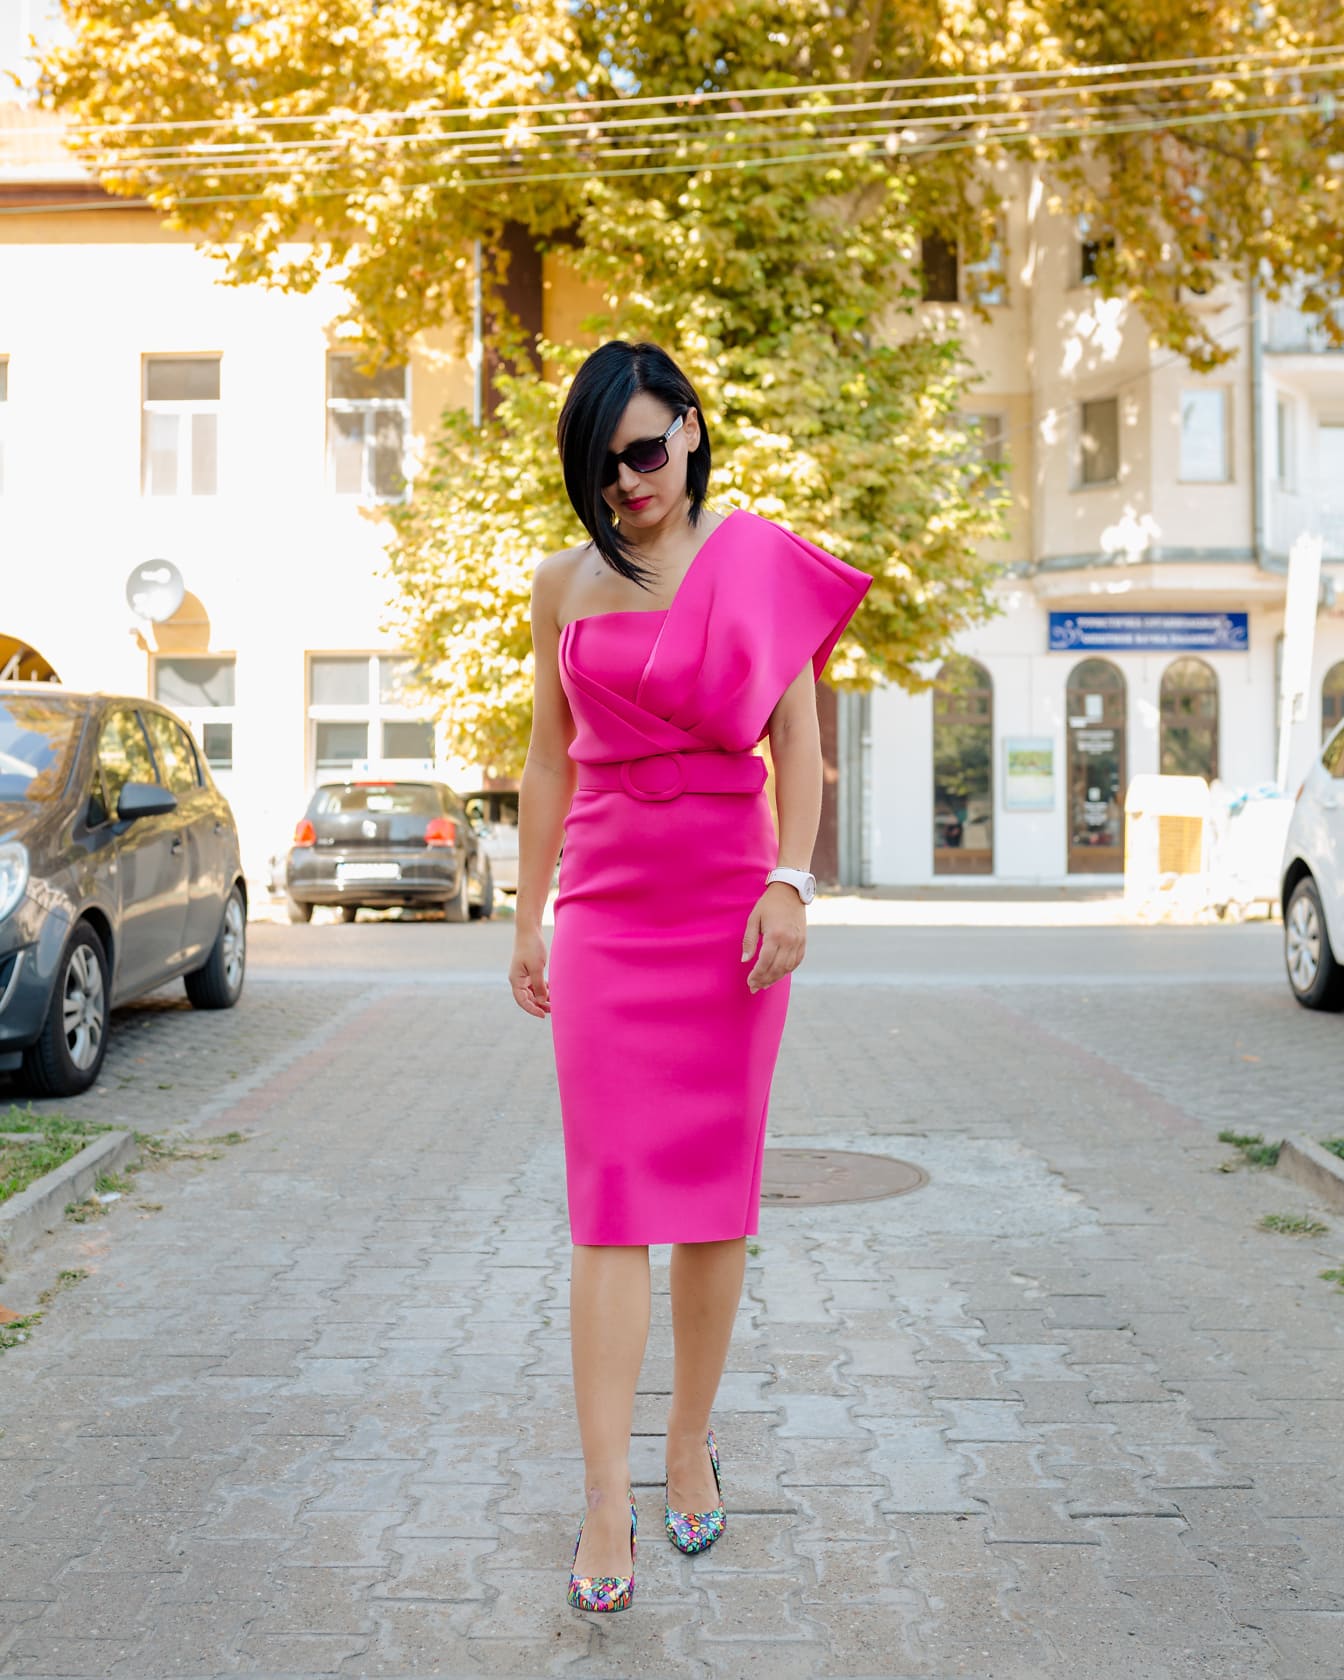 Elegantní žena v módních růžových šatech kráčející po ulici